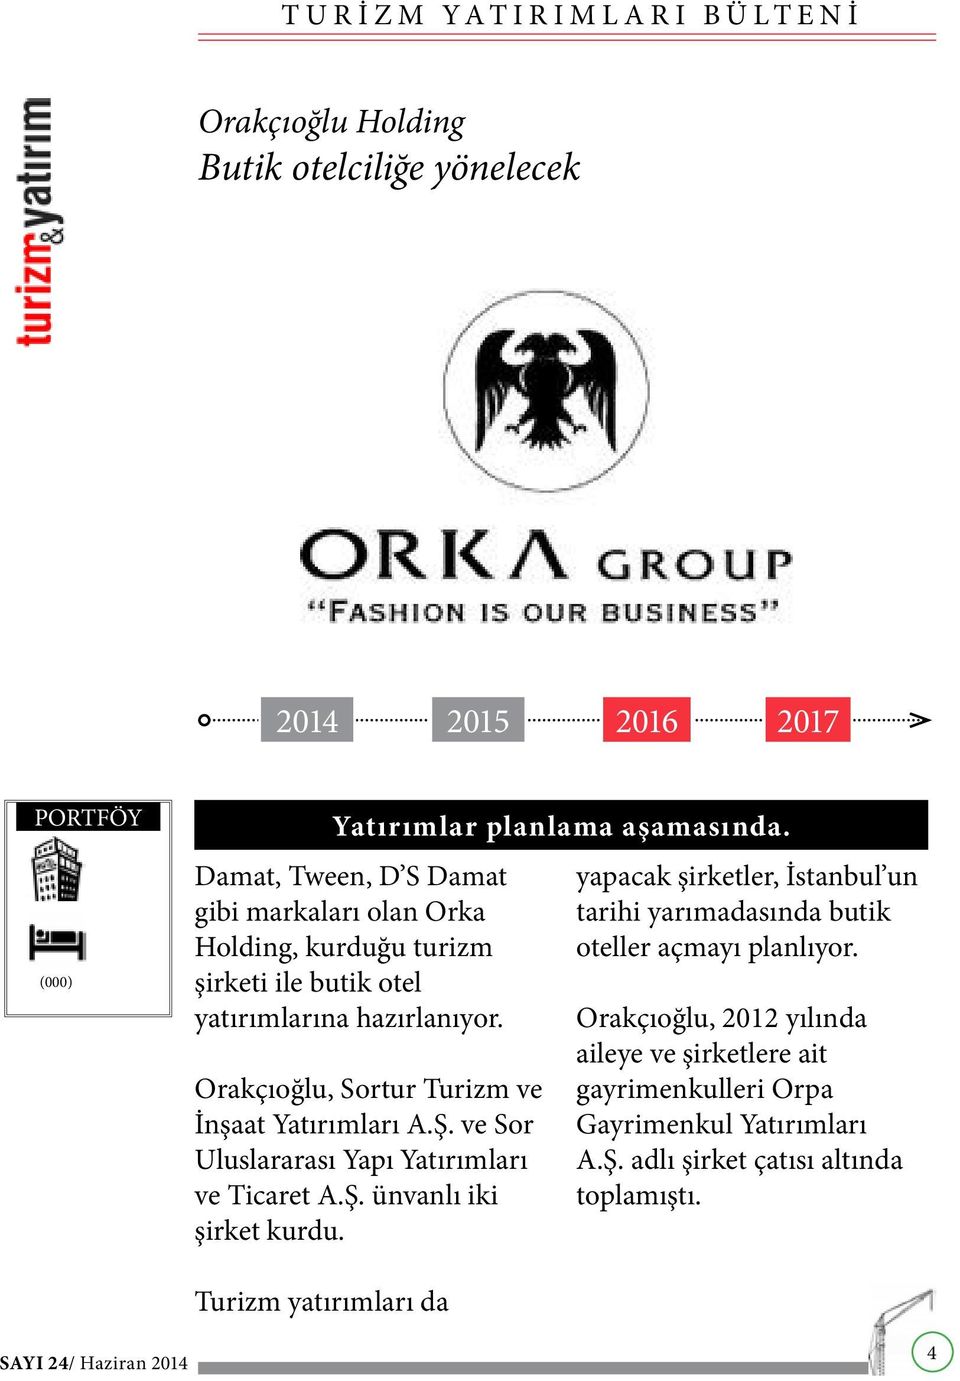 Orakçıoğlu, Sortur Turizm ve İnşaat Yatırımları A.Ş. ve Sor Uluslararası Yapı Yatırımları ve Ticaret A.Ş. ünvanlı iki şirket kurdu.